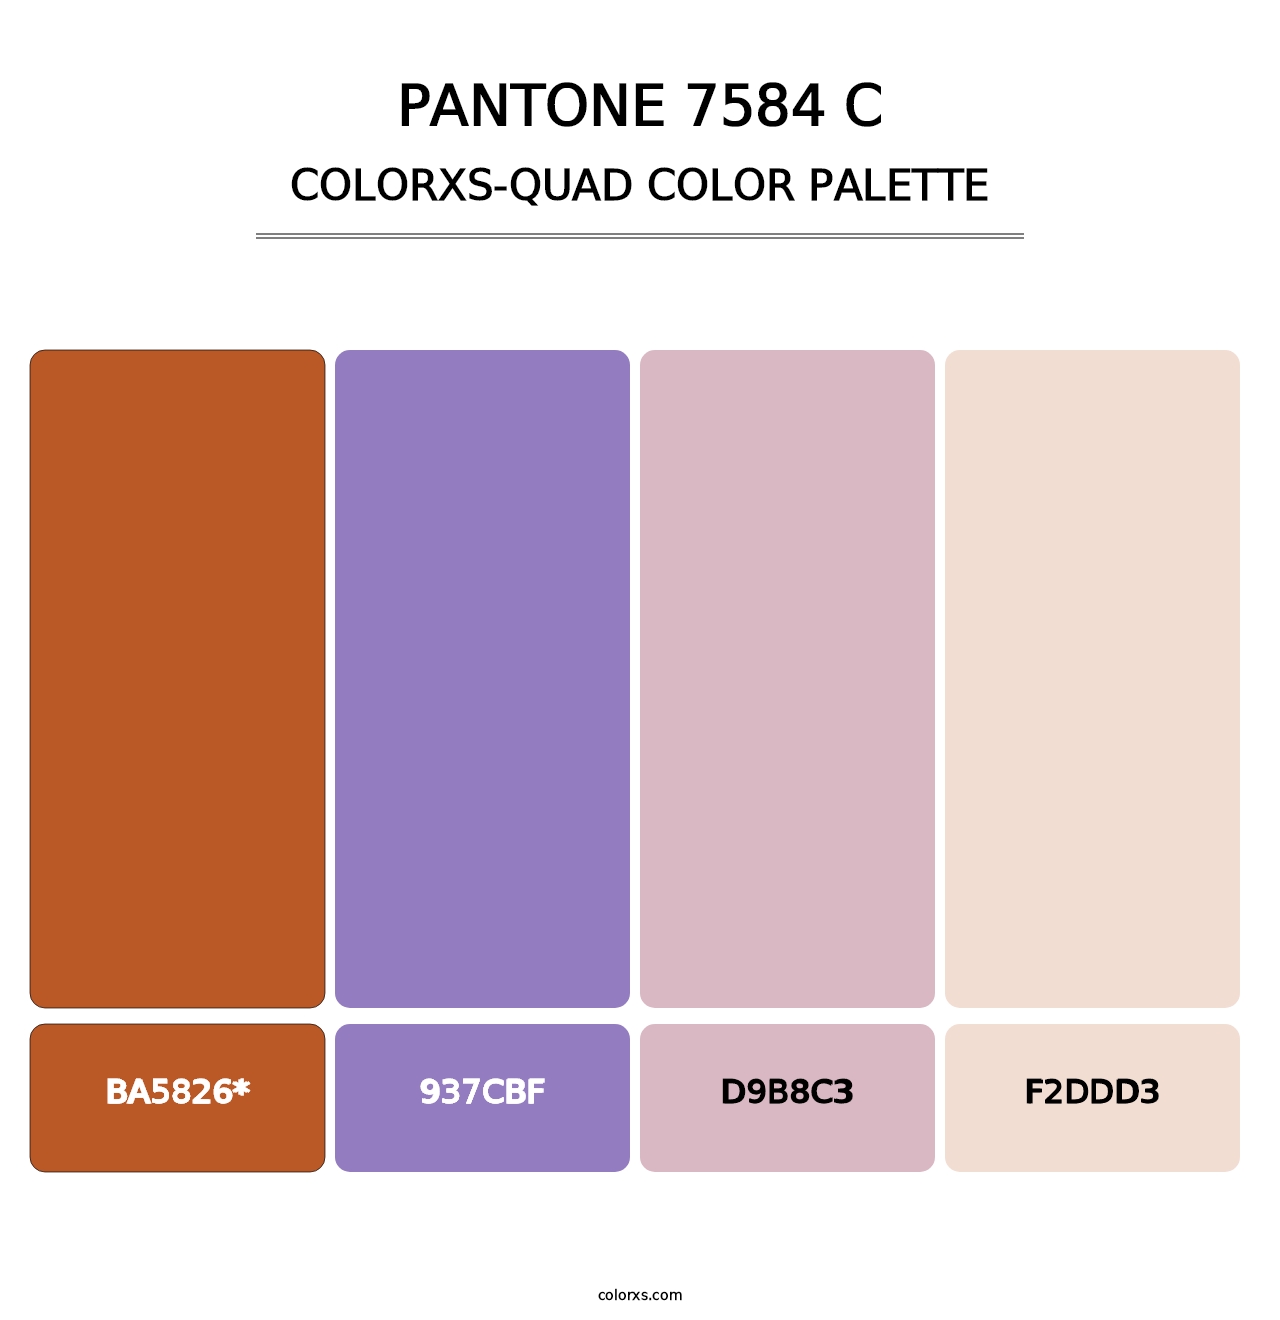 PANTONE 7584 C - Colorxs Quad Palette